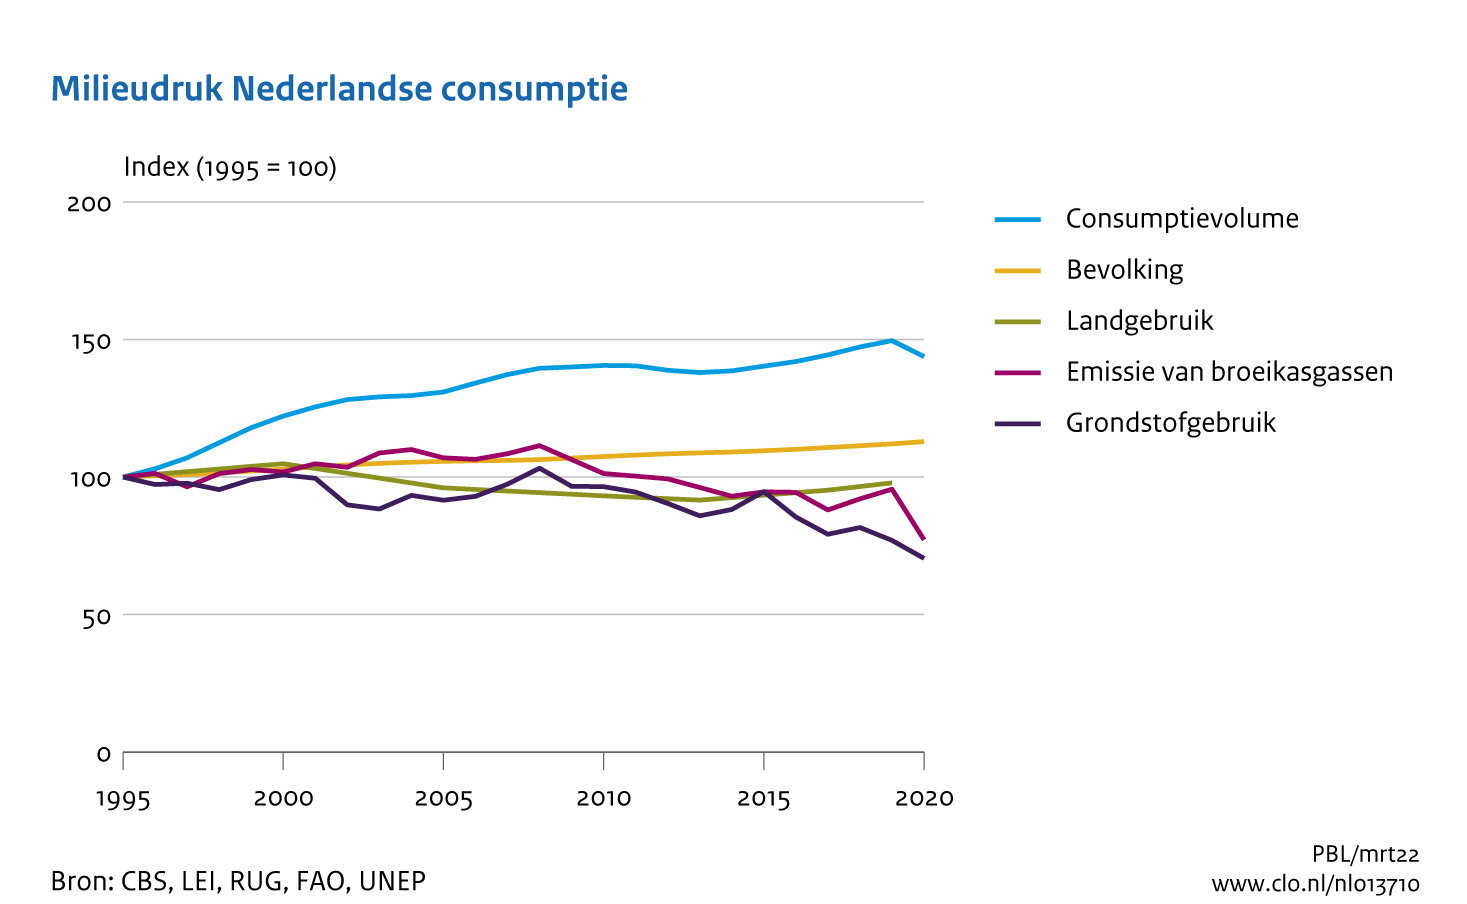 Figuur Index van consumptievolume, broeikasgasemissie, ruimtegebruik, grondstofgebruik en bevolkingsgroei sinds 1995. In de rest van de tekst wordt deze figuur uitgebreider uitgelegd.